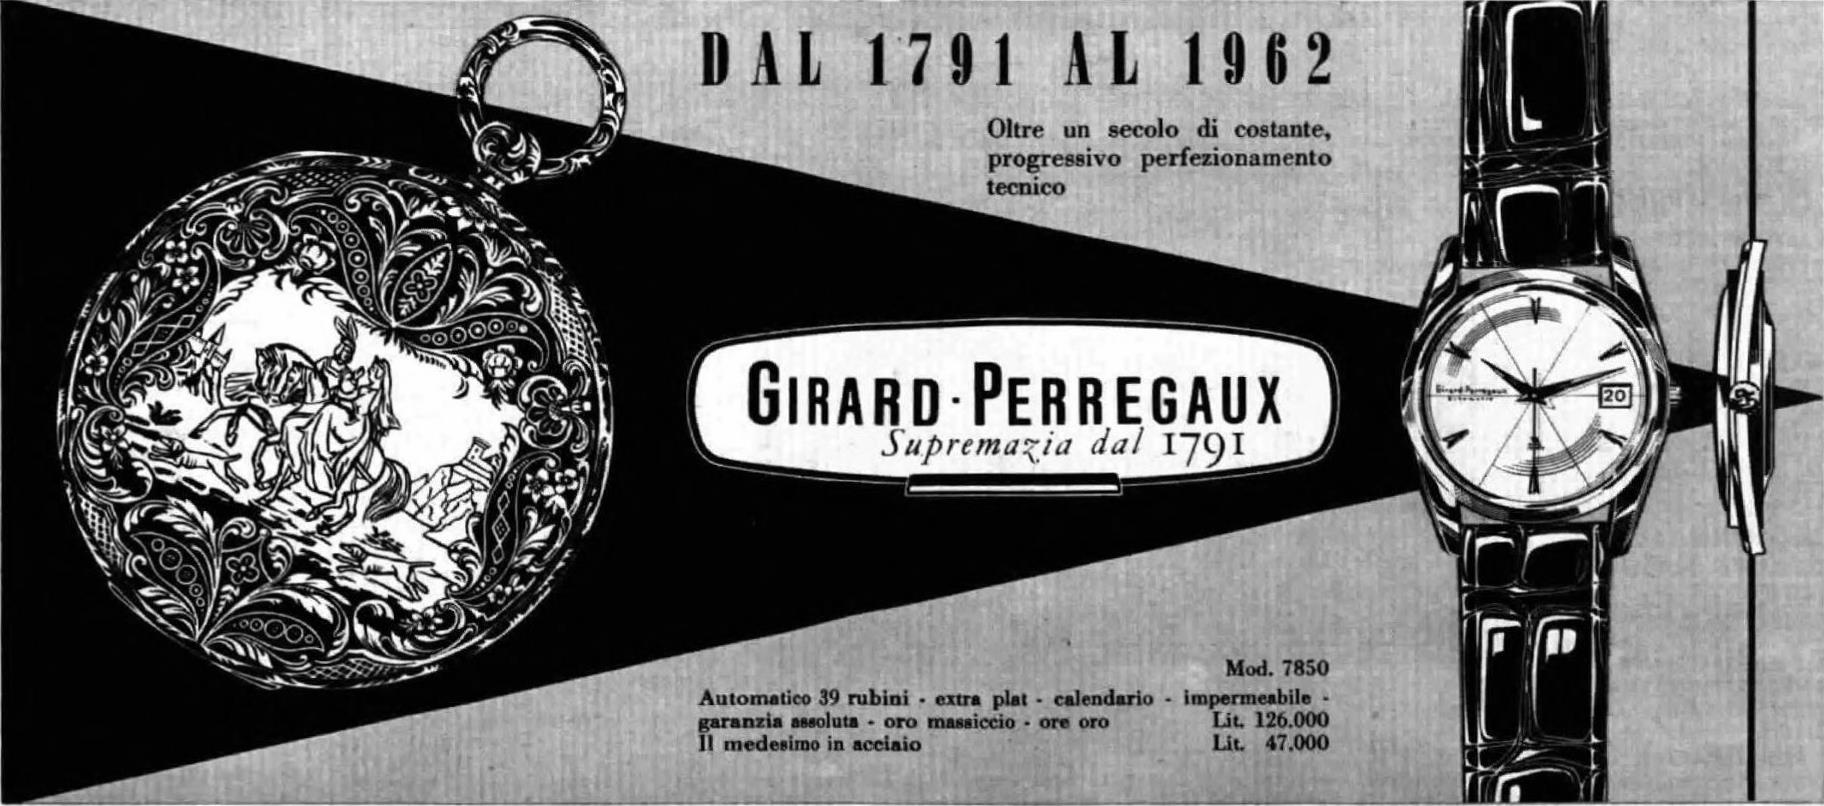 Girard 1962 131.jpg